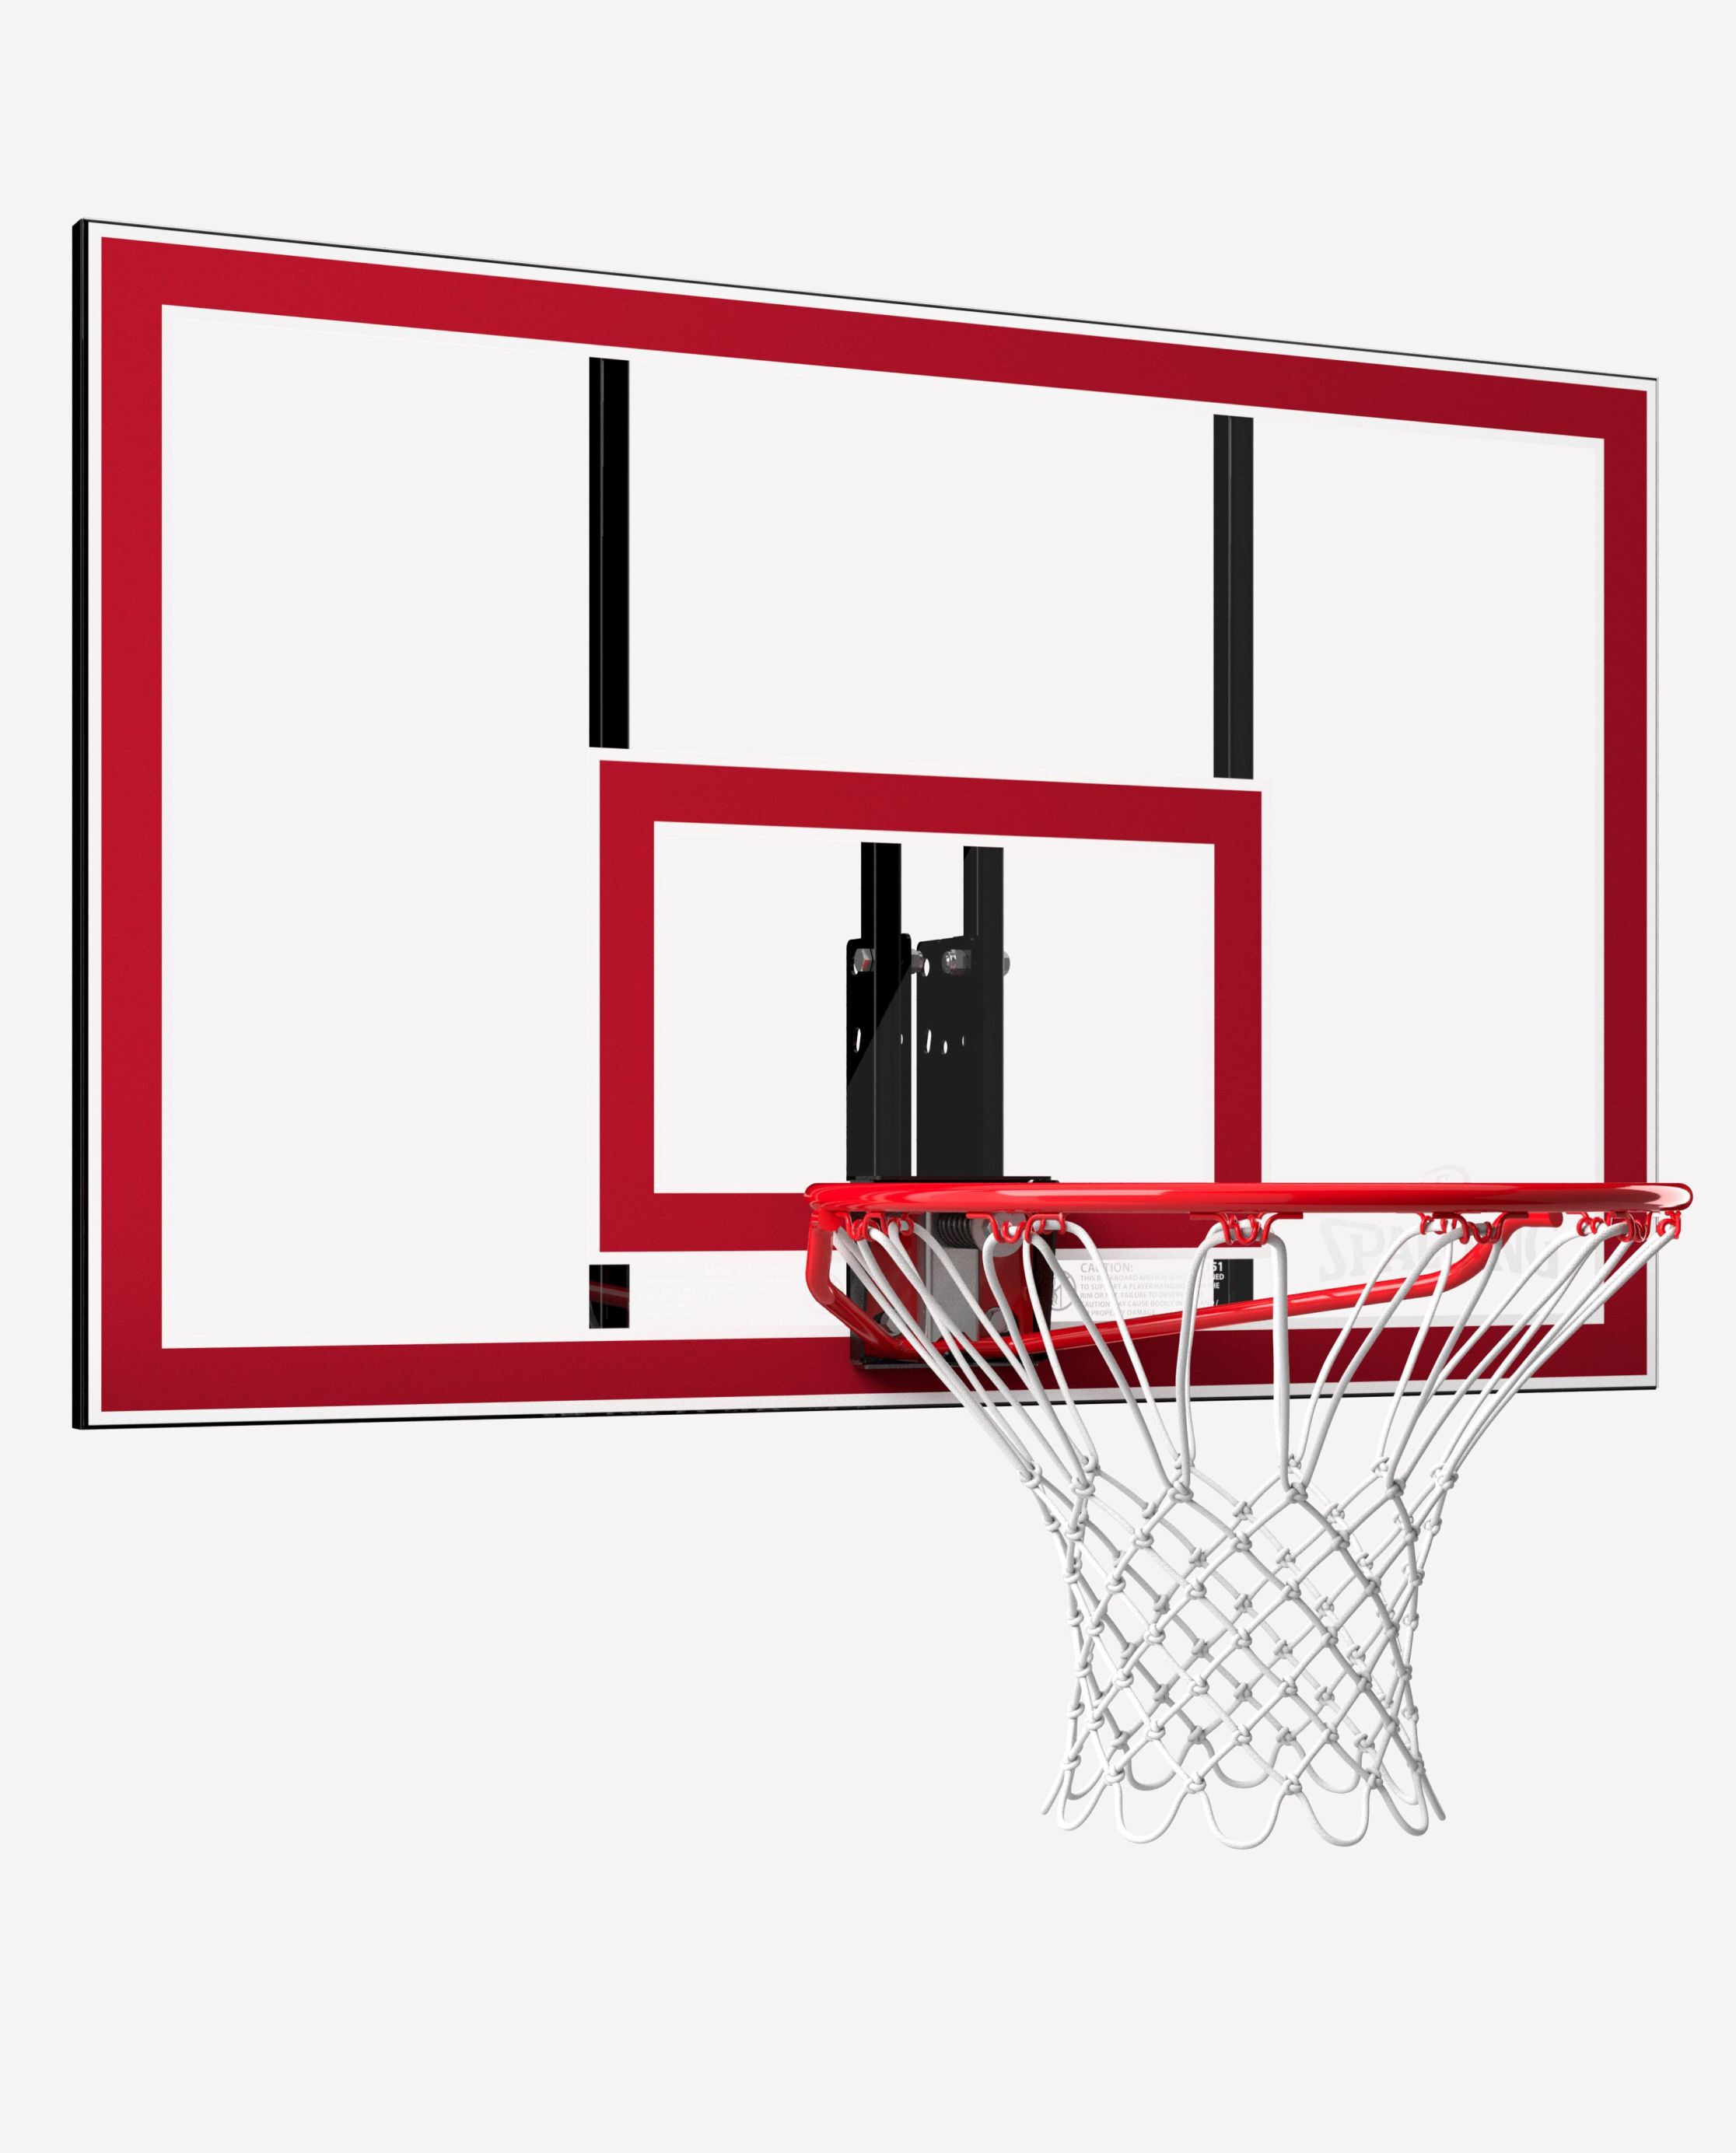 Spalding 48" & 54" Inch Arena Foam Board Pad Basketball Backboard Model# 16648 